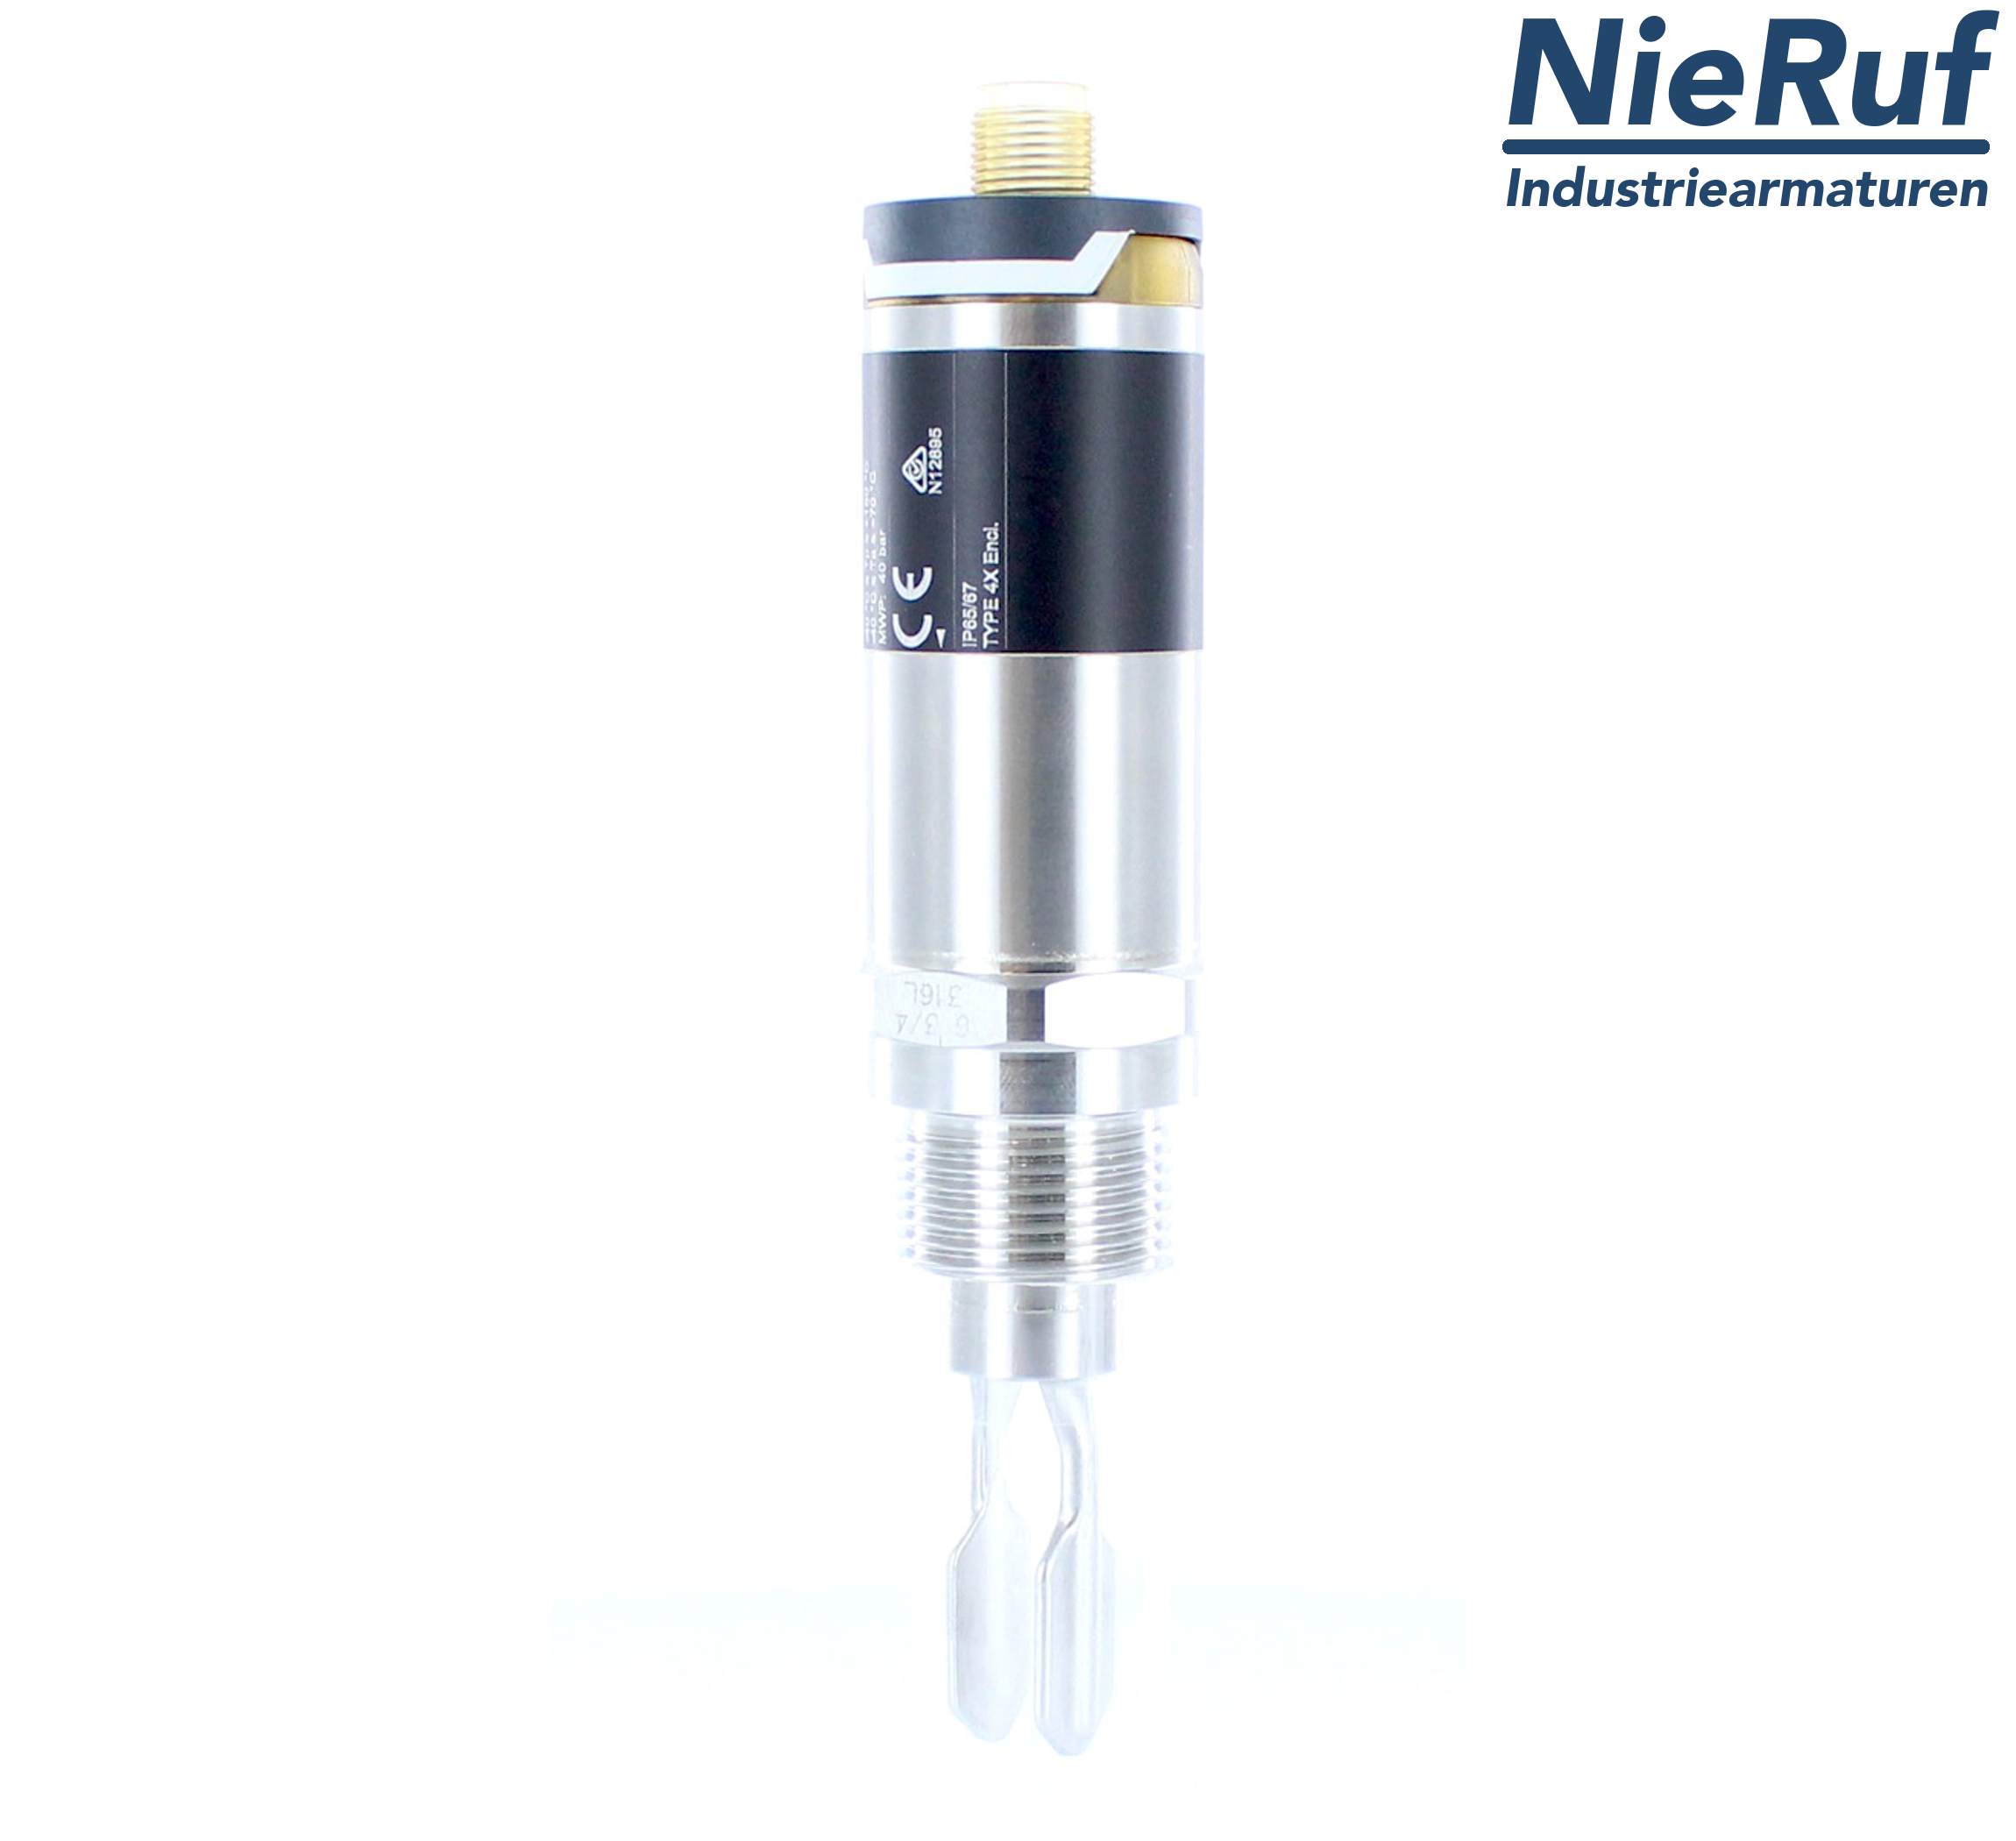 fluid level gauge G 1/2" inch FM01 valve plug 10 - 30 V DC